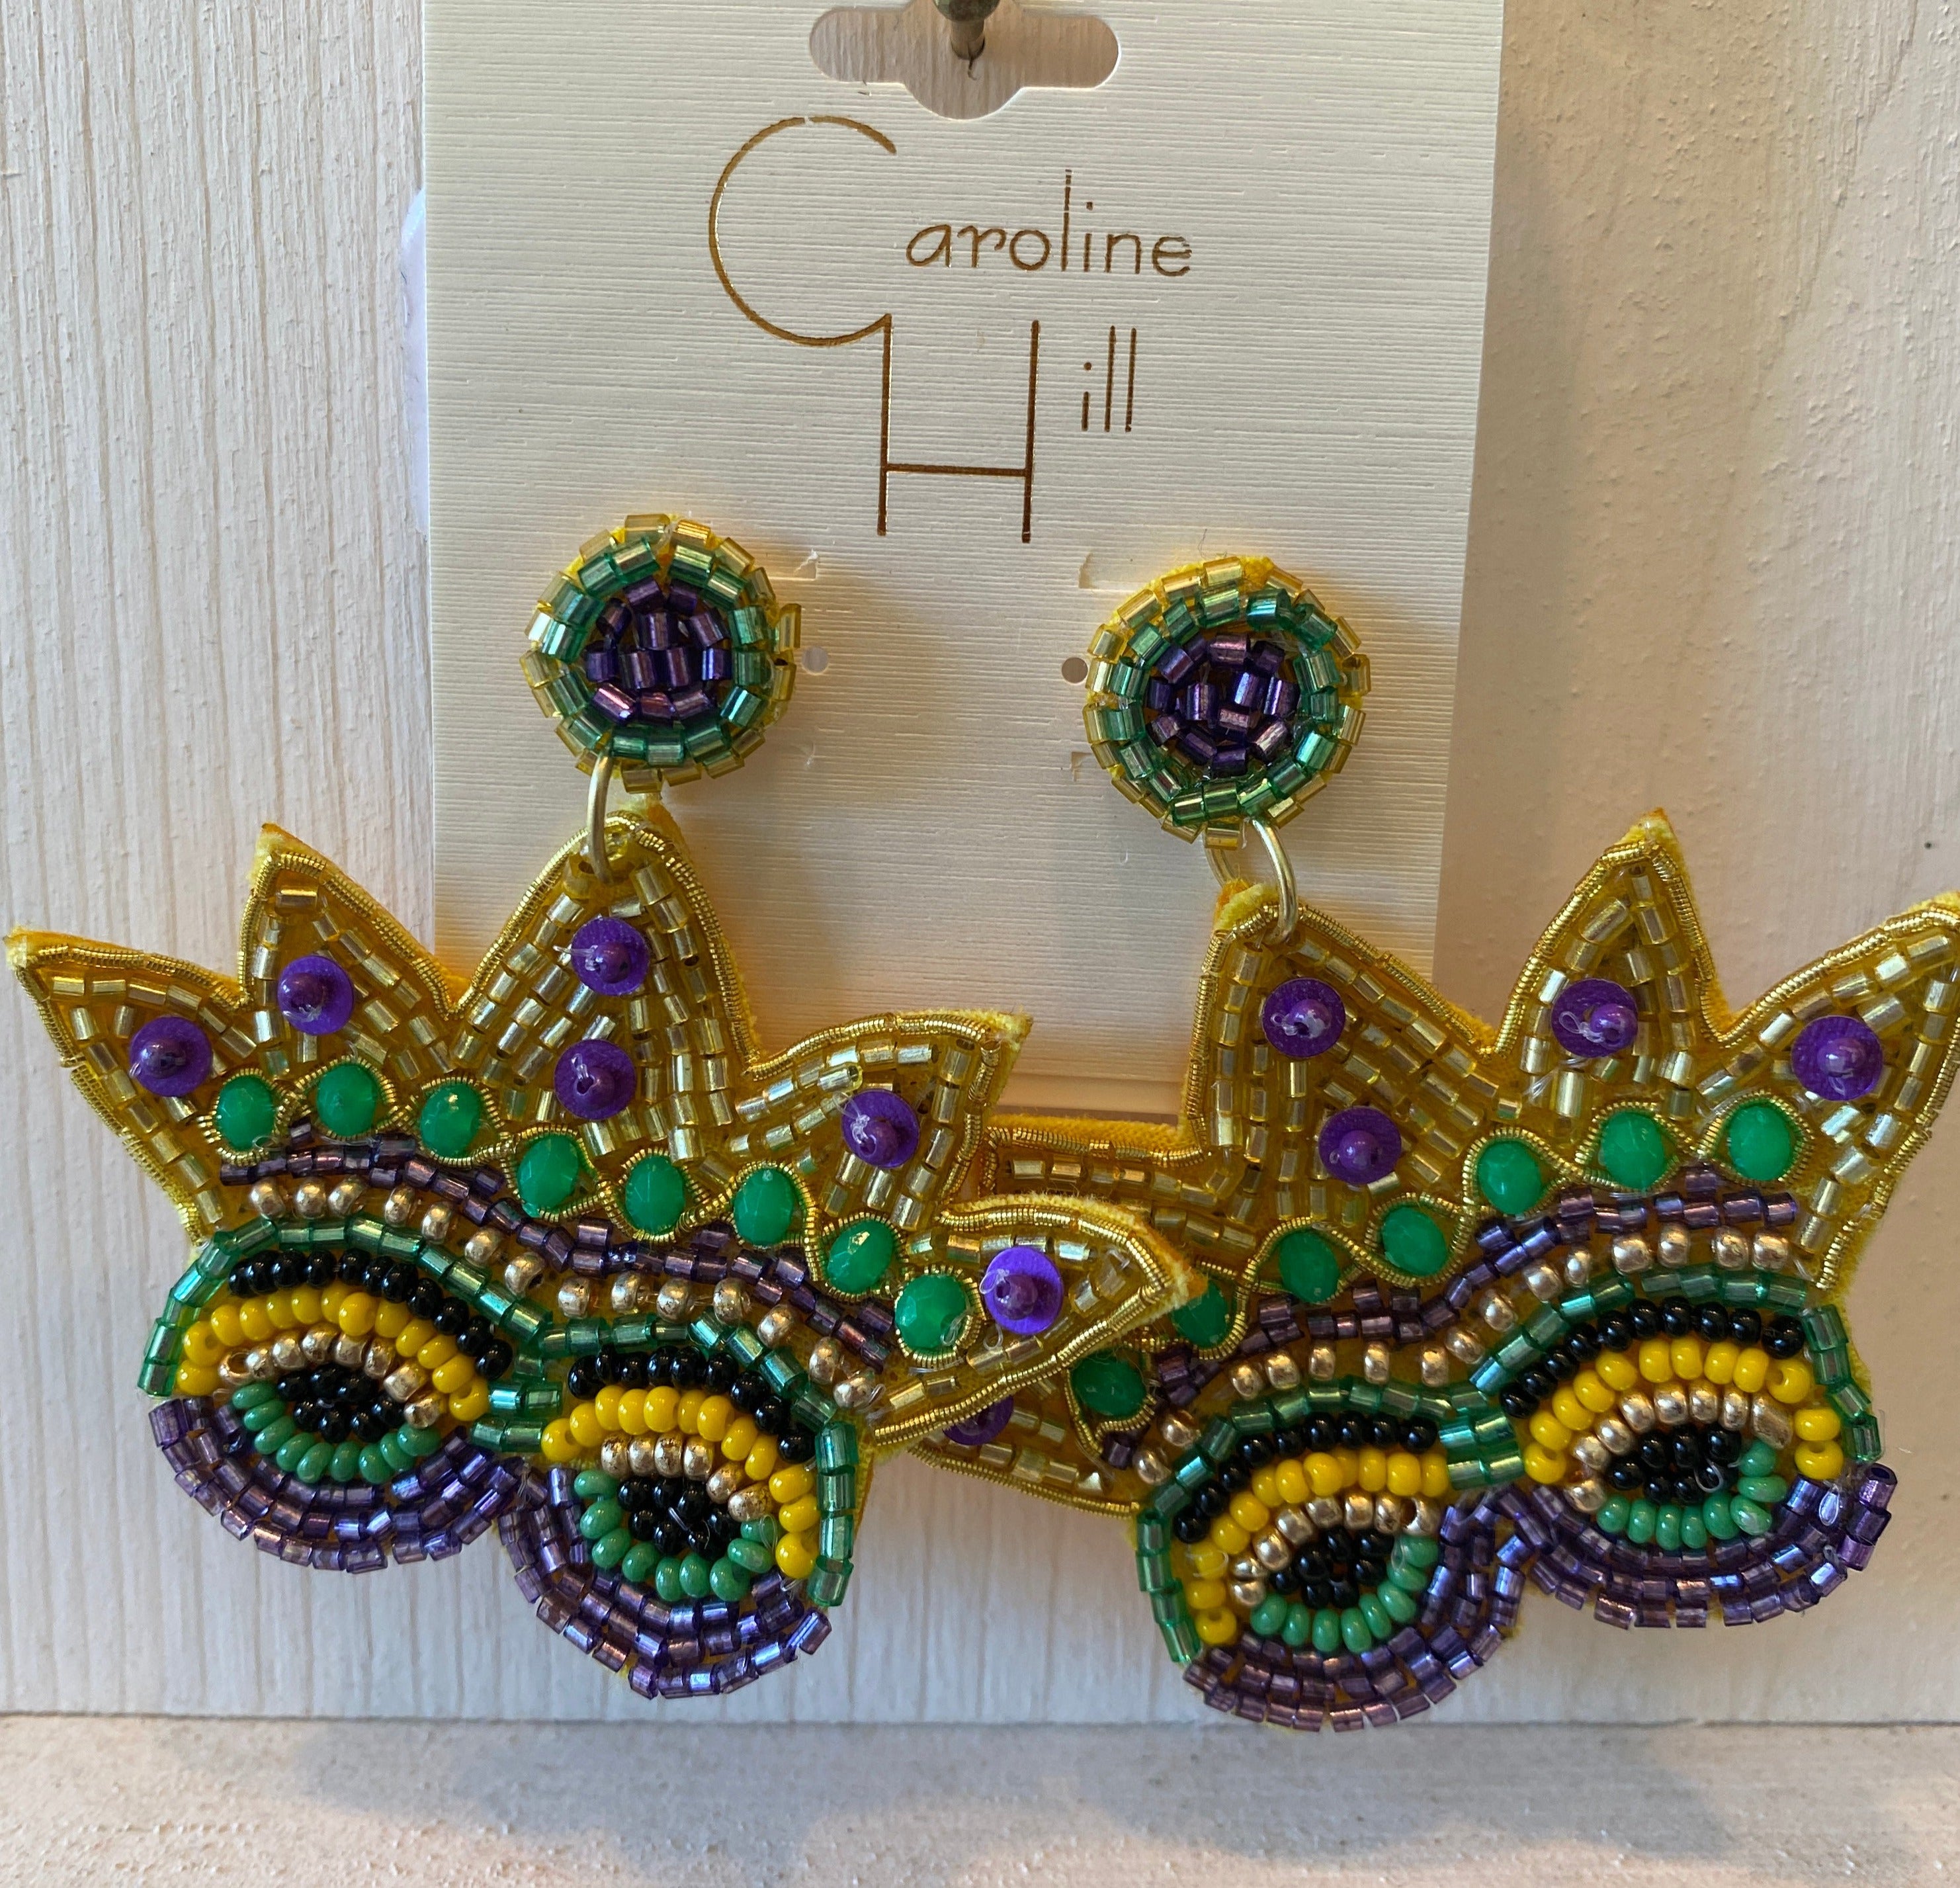 Mardi Gras Mask earrings by Caroline Hill